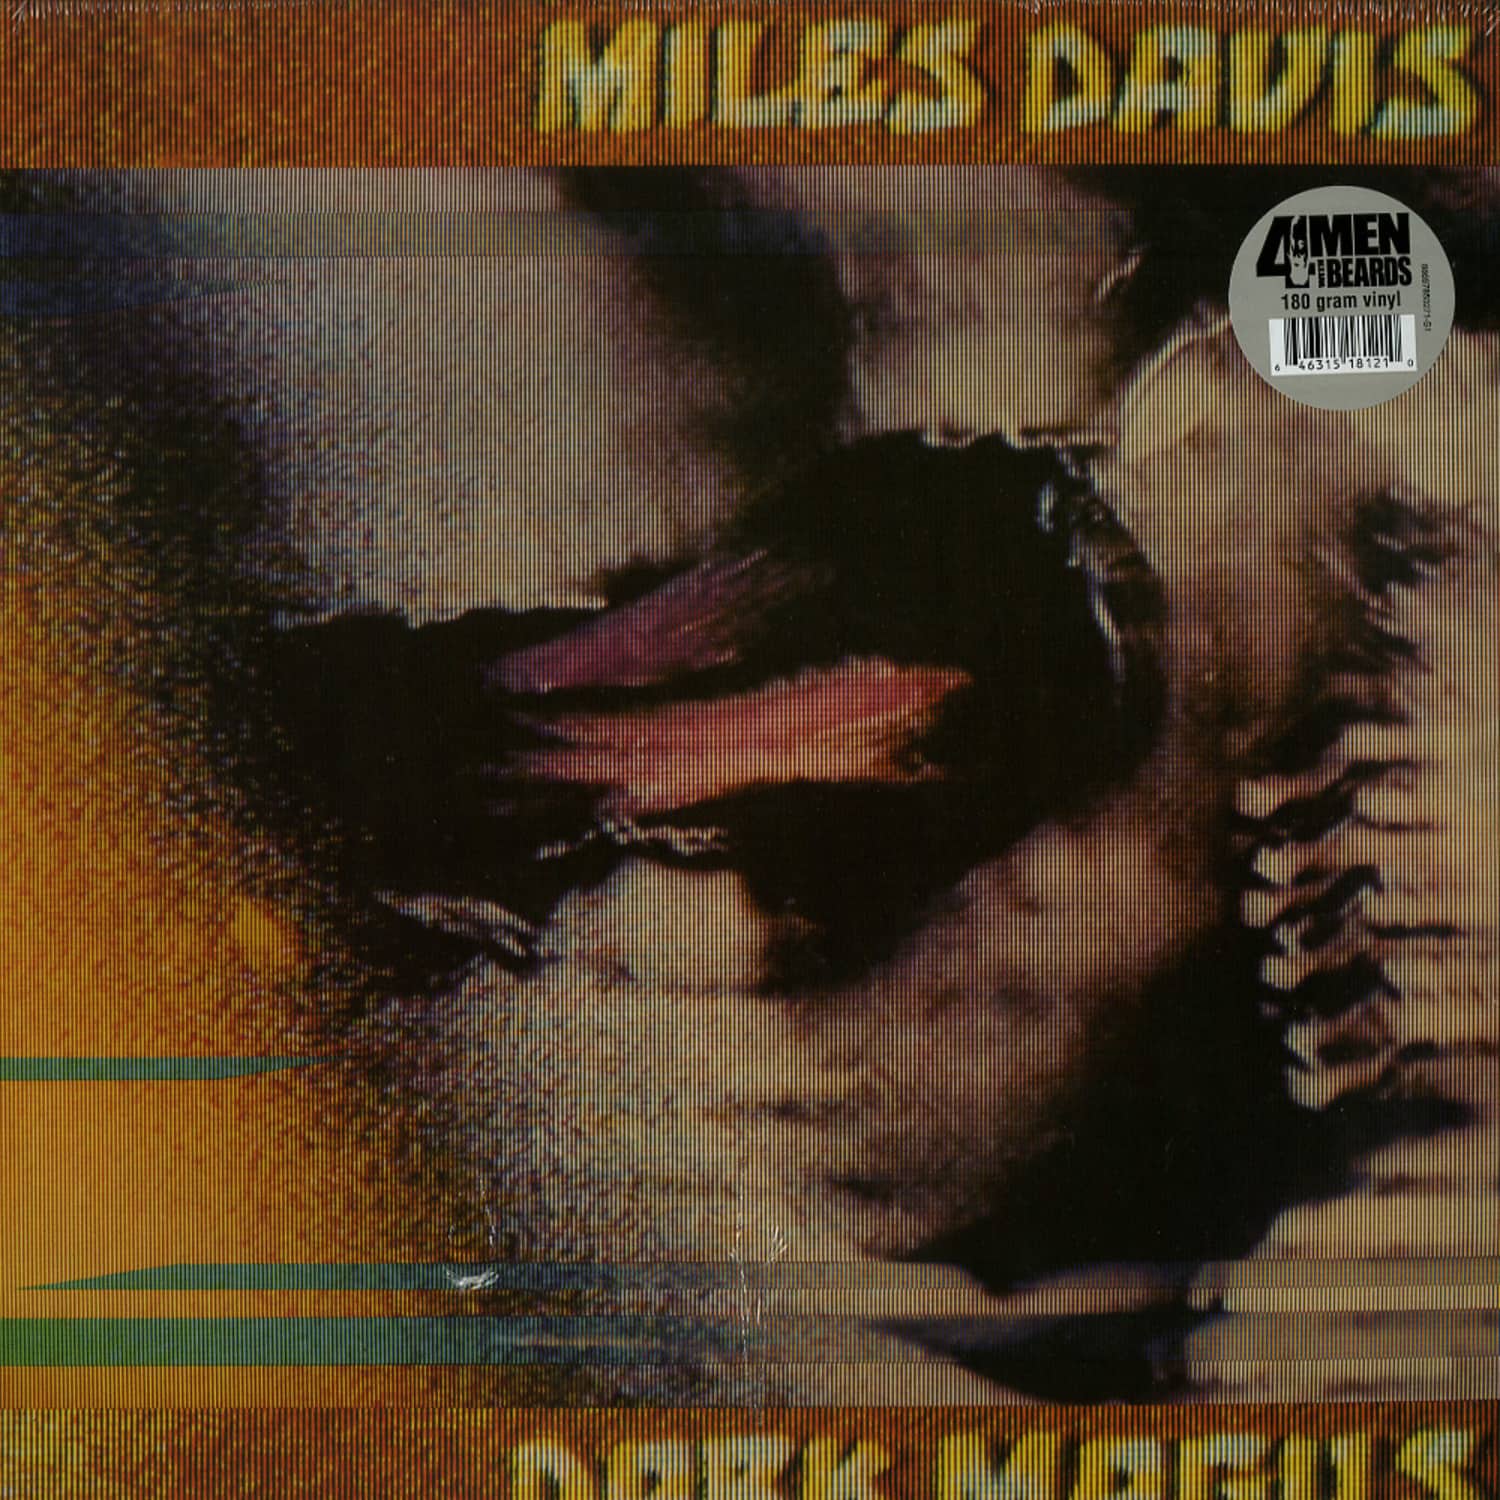 Miles Davis - DARK MAGNUS 